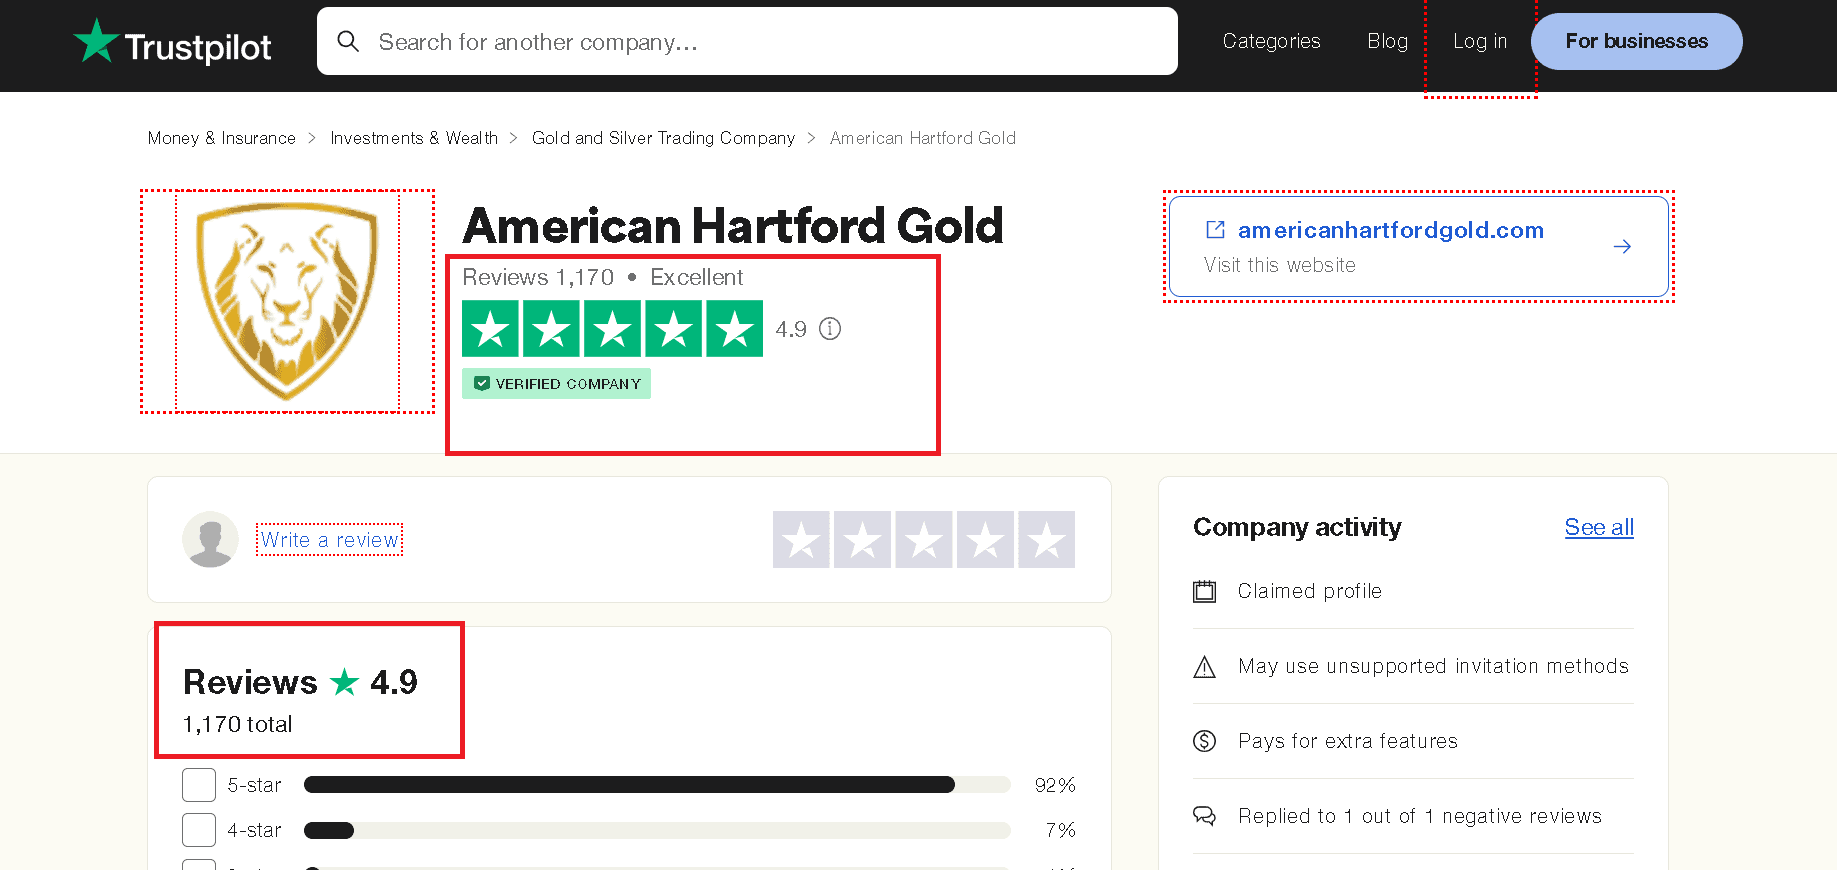 American Hartford Gold Trustpilot profile